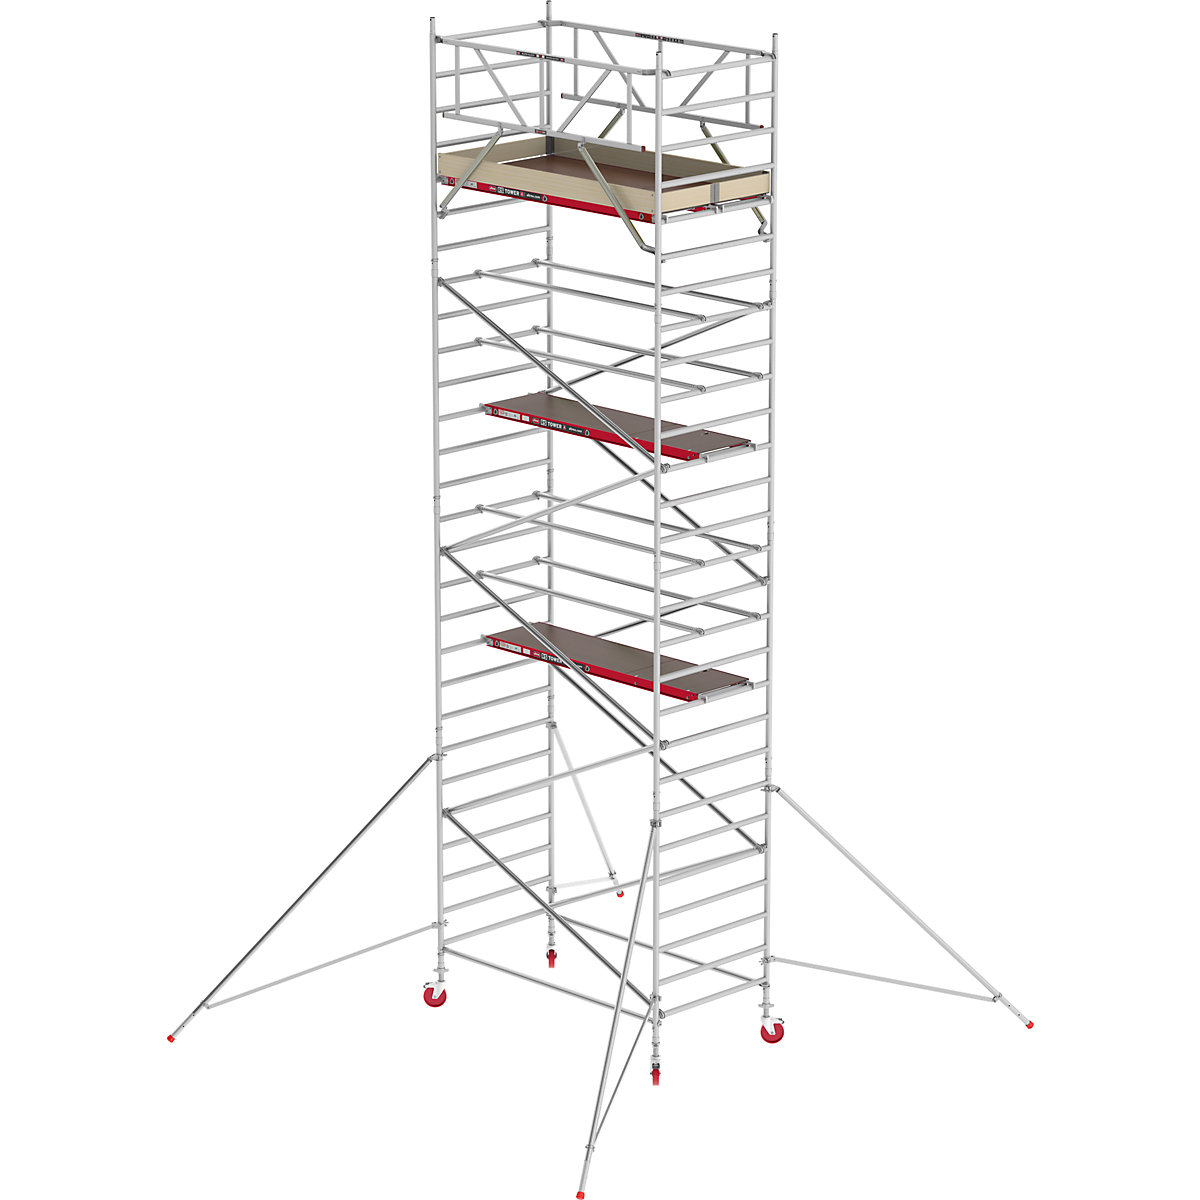 Altrex Fahrgerüst RS TOWER 42 breit, Holzplattform, Länge 1,85 m, Arbeitshöhe 9,20 m